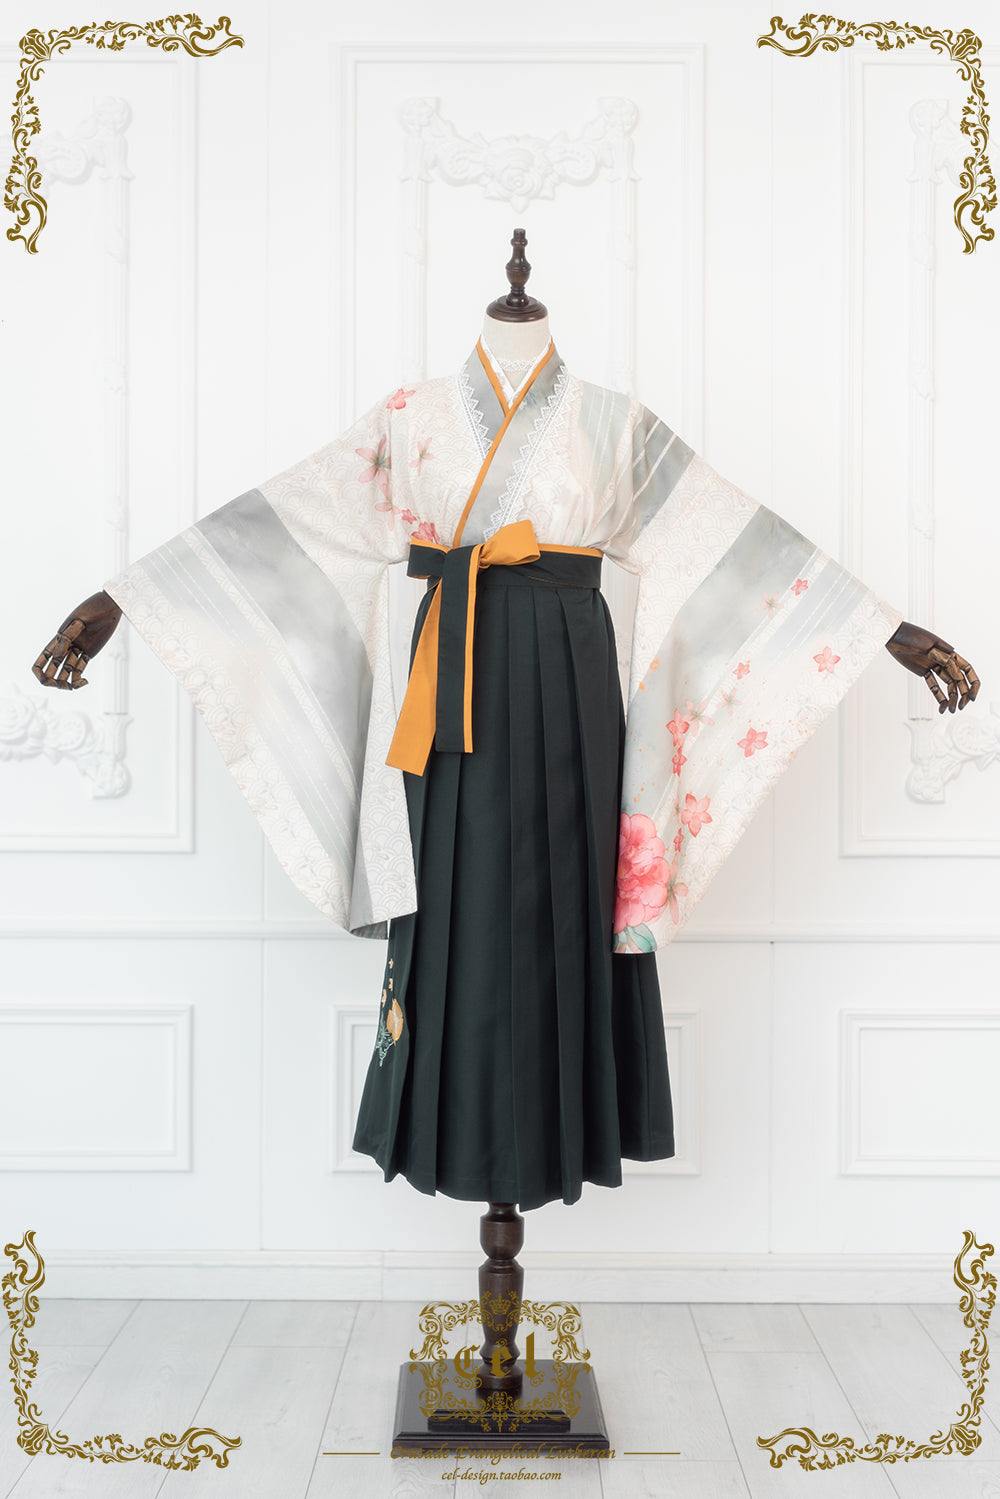 【即納】グレーの着物風トップスと墨緑の袴風スカートのセットアップ・Mサイズ